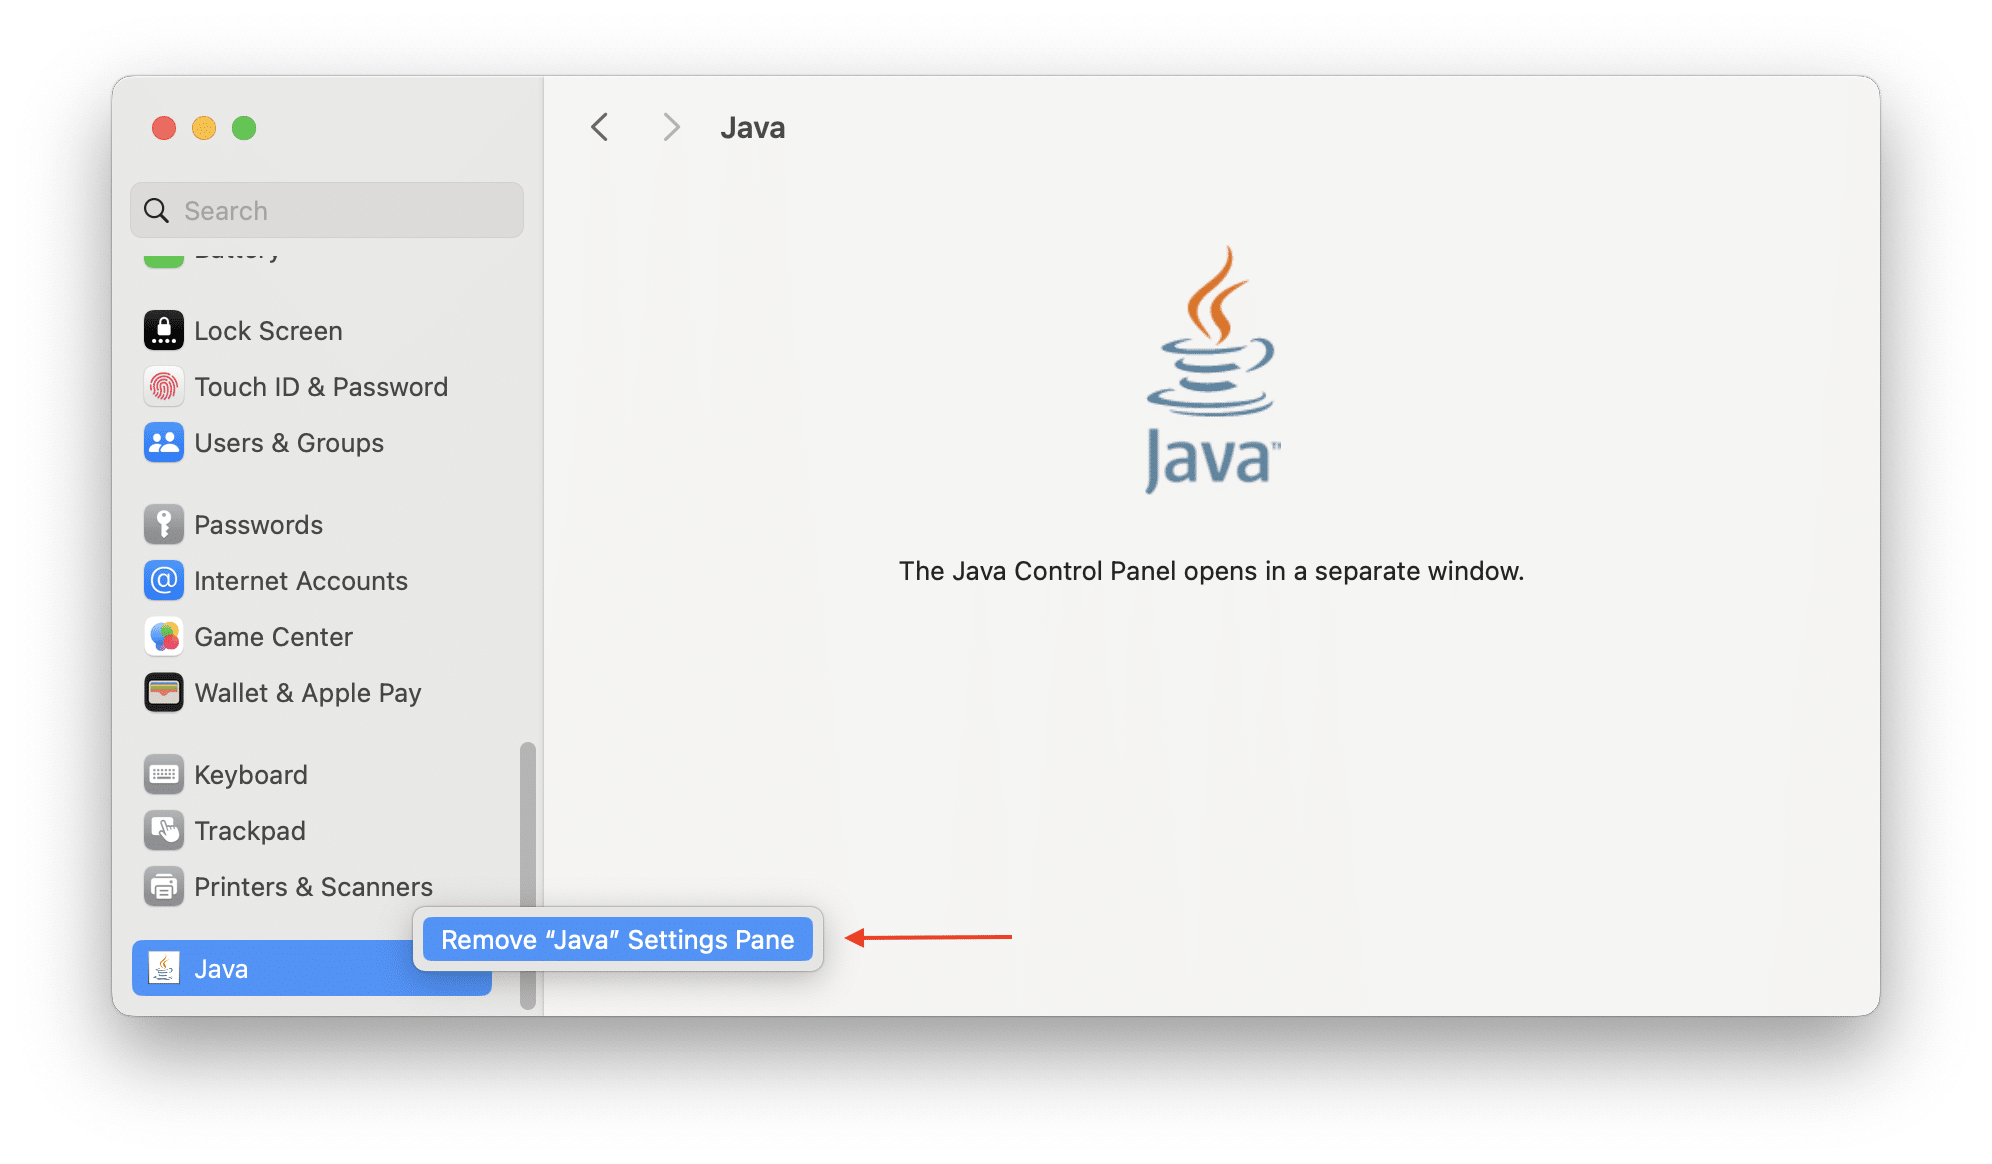 Removing Java settings pane